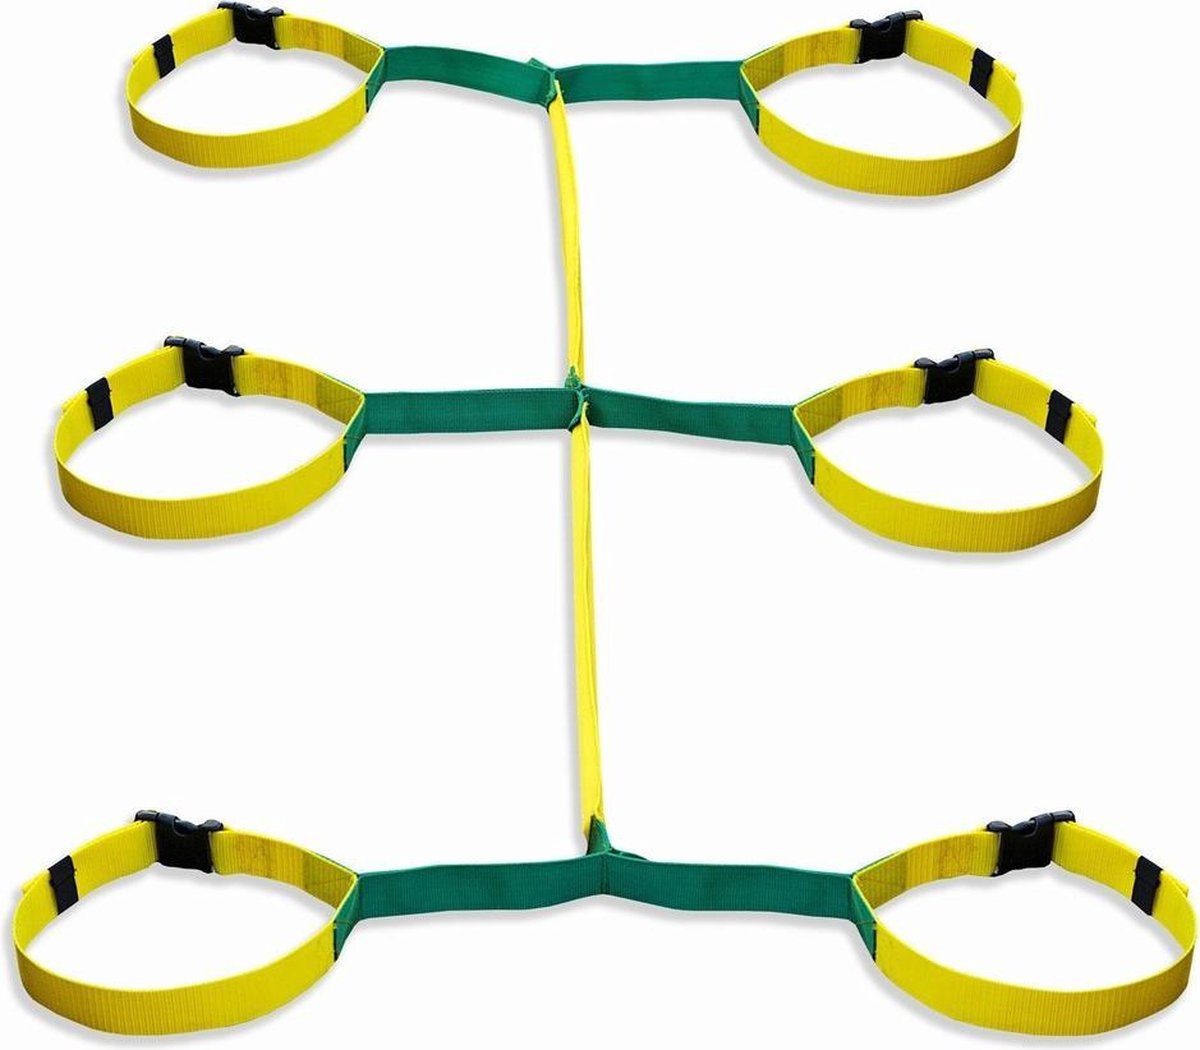 Corde de marche Walkodile Safety Web, harnais de randonnée, 6 enfants